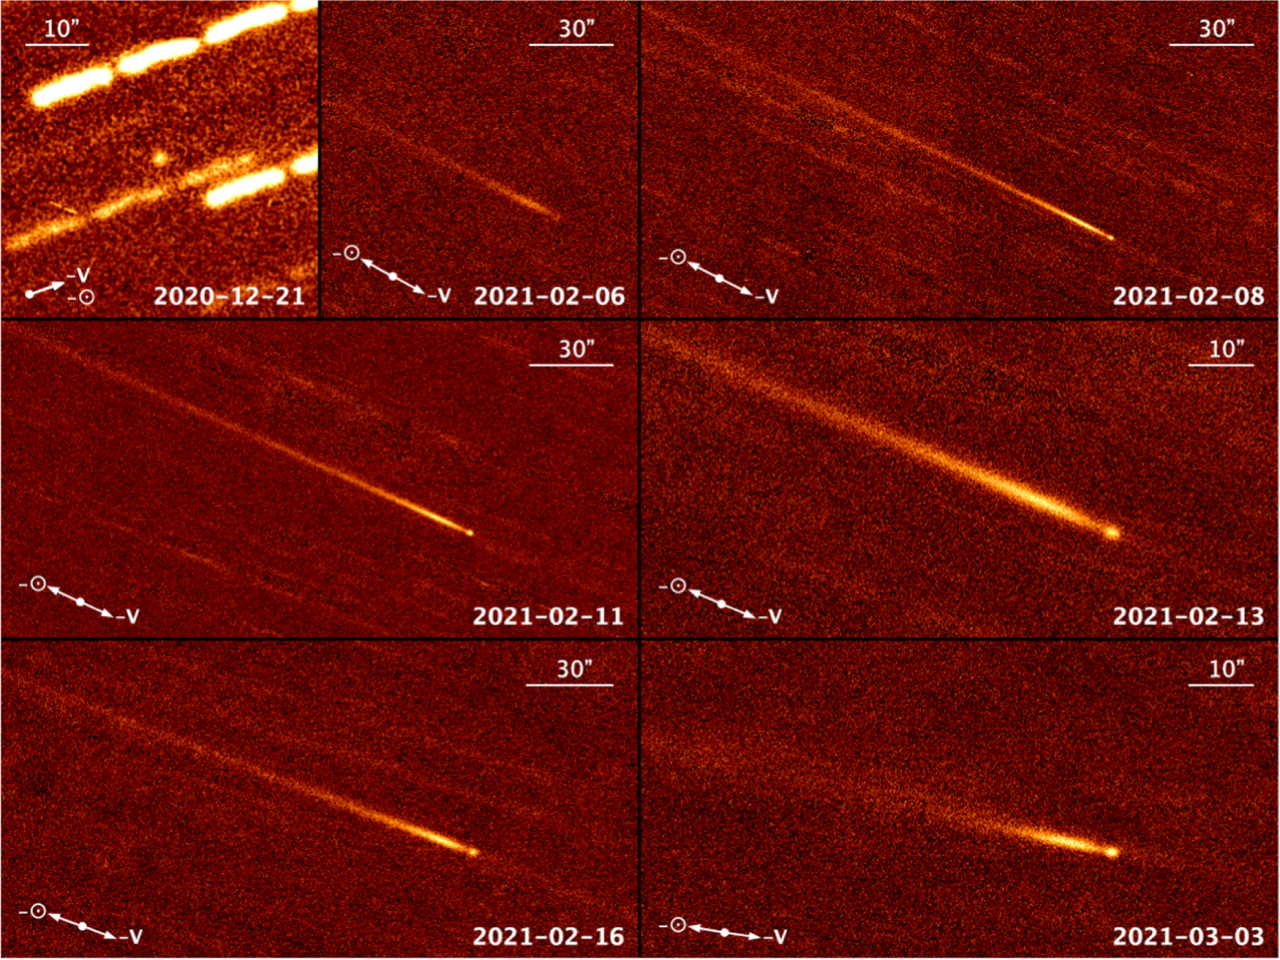 323P/SOHO на зображенні «Субару» у грудні (перше фото), телескопа CFHT у лютому (вже після перигелію, наступні три фото), телескопа LDT (6 знімок) і телескопа «Джеміні-Північ». Man-To Hui et al. / The Astronomical Journal, 2022